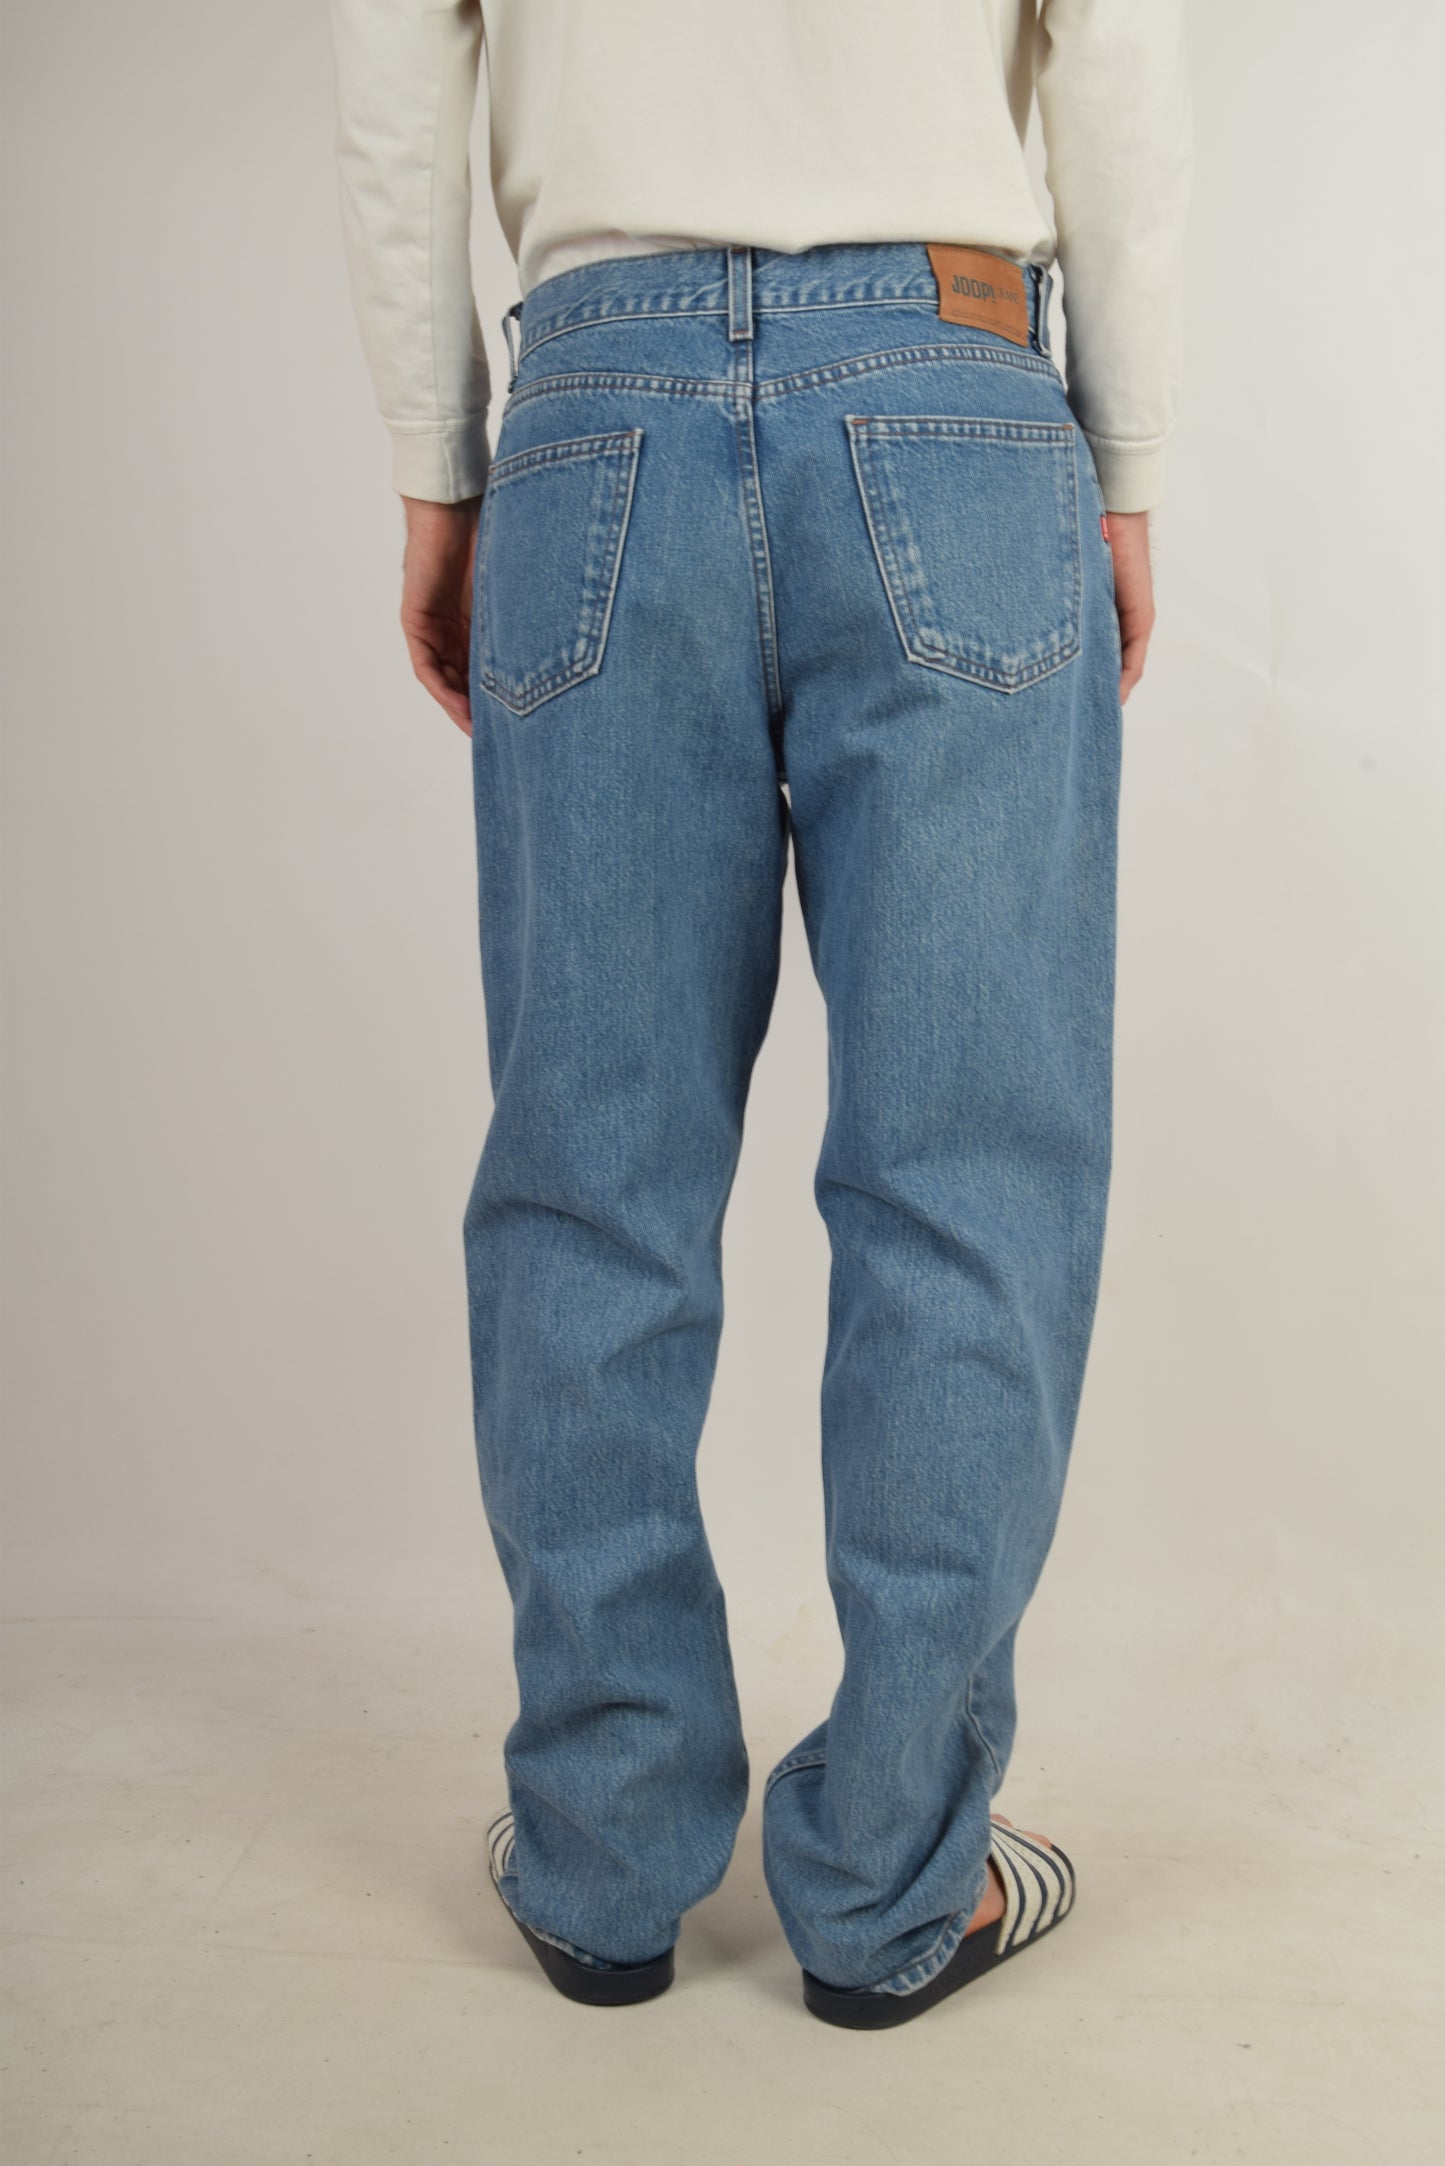 Vintage 90s Joop Jeans